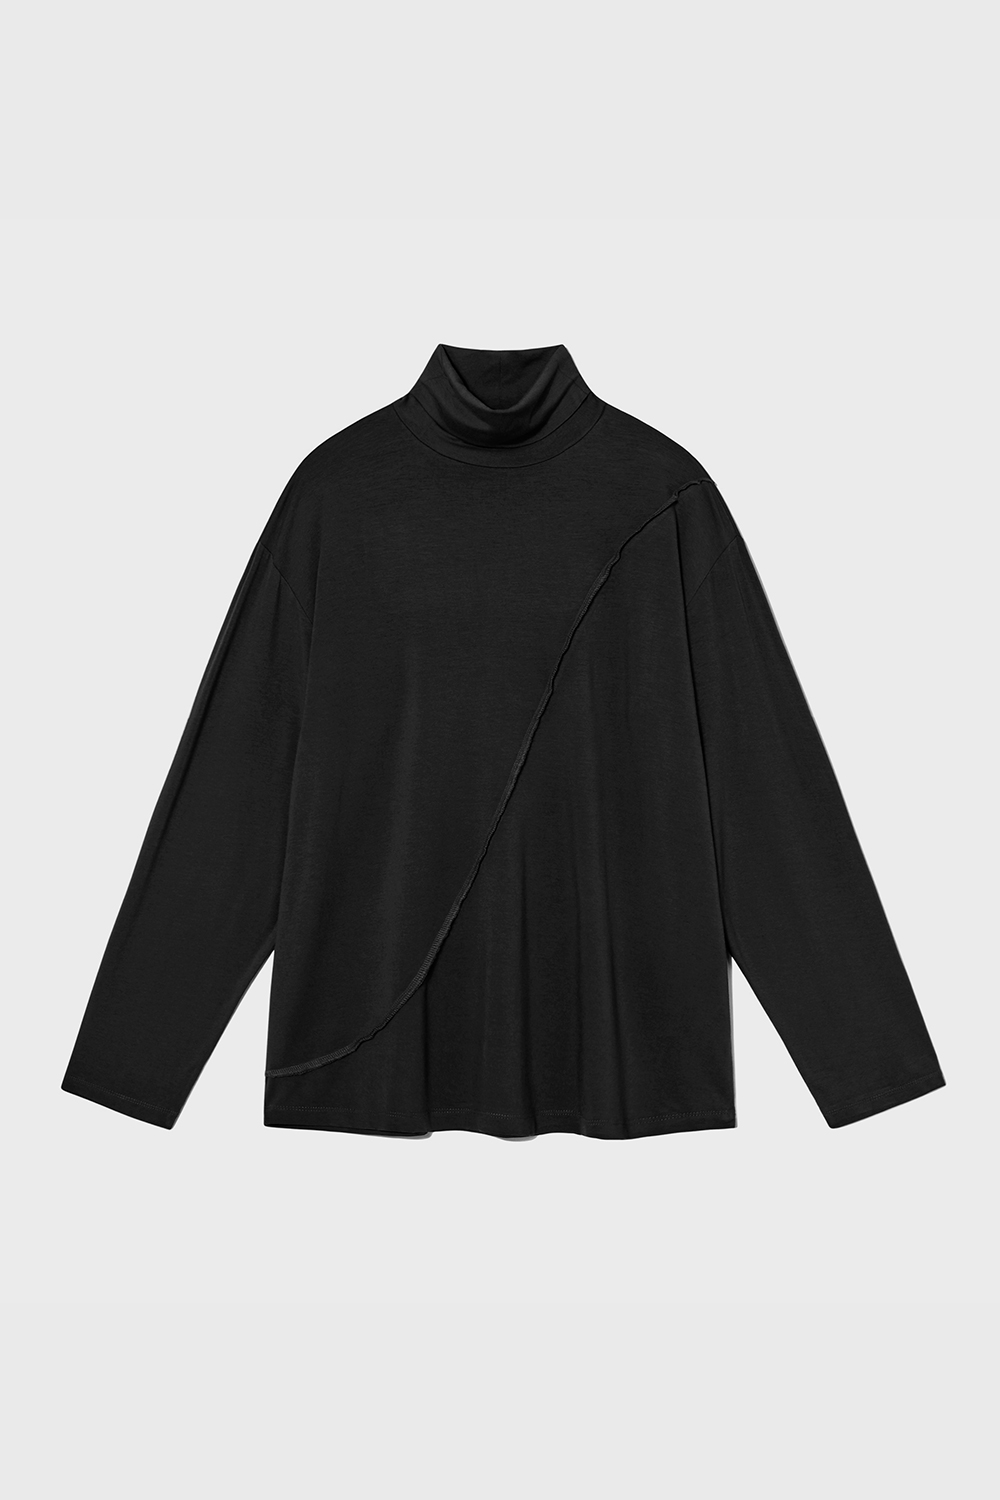 Diagonal High Neck Pullover (Black)